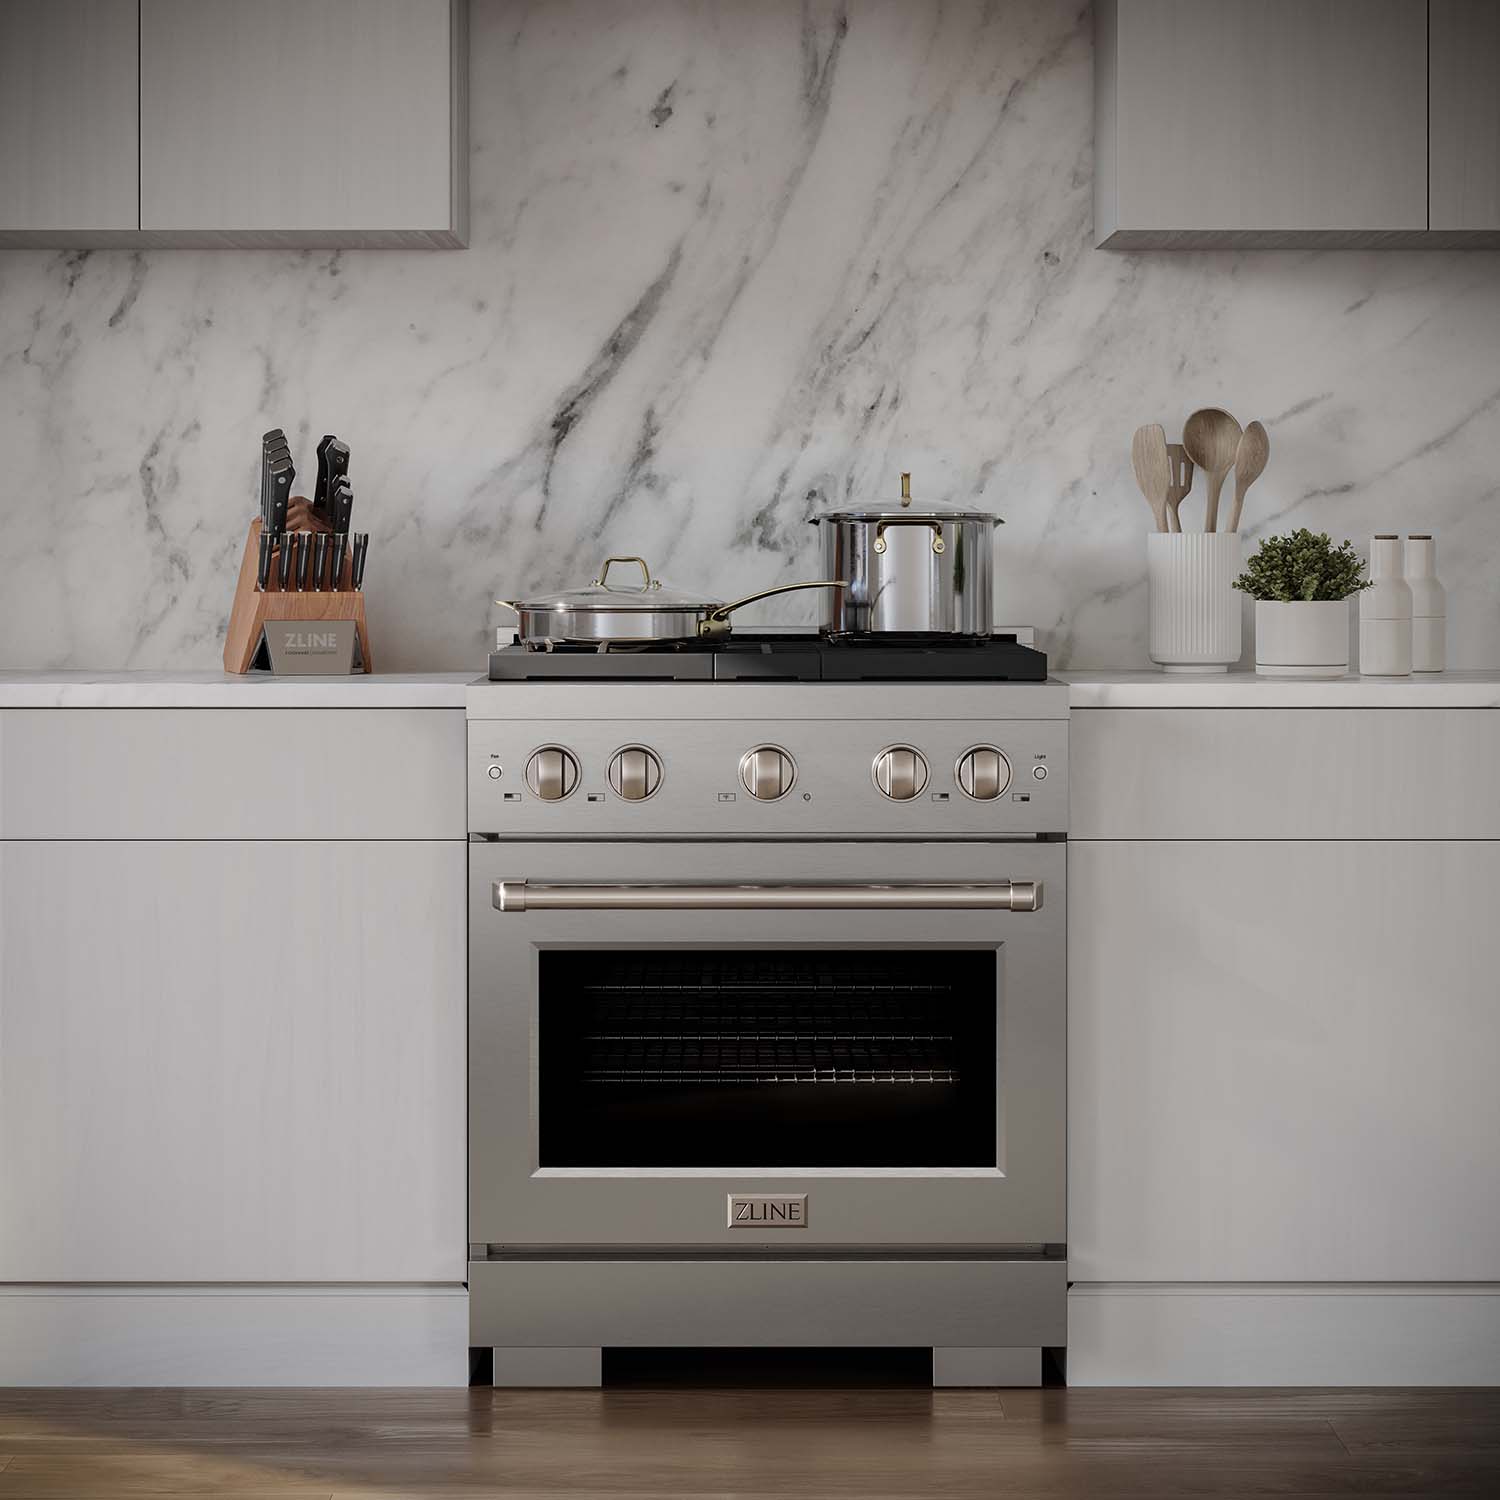 ZLINE 30" Stainless Steel Gas Range in a modern luxury kitchen.